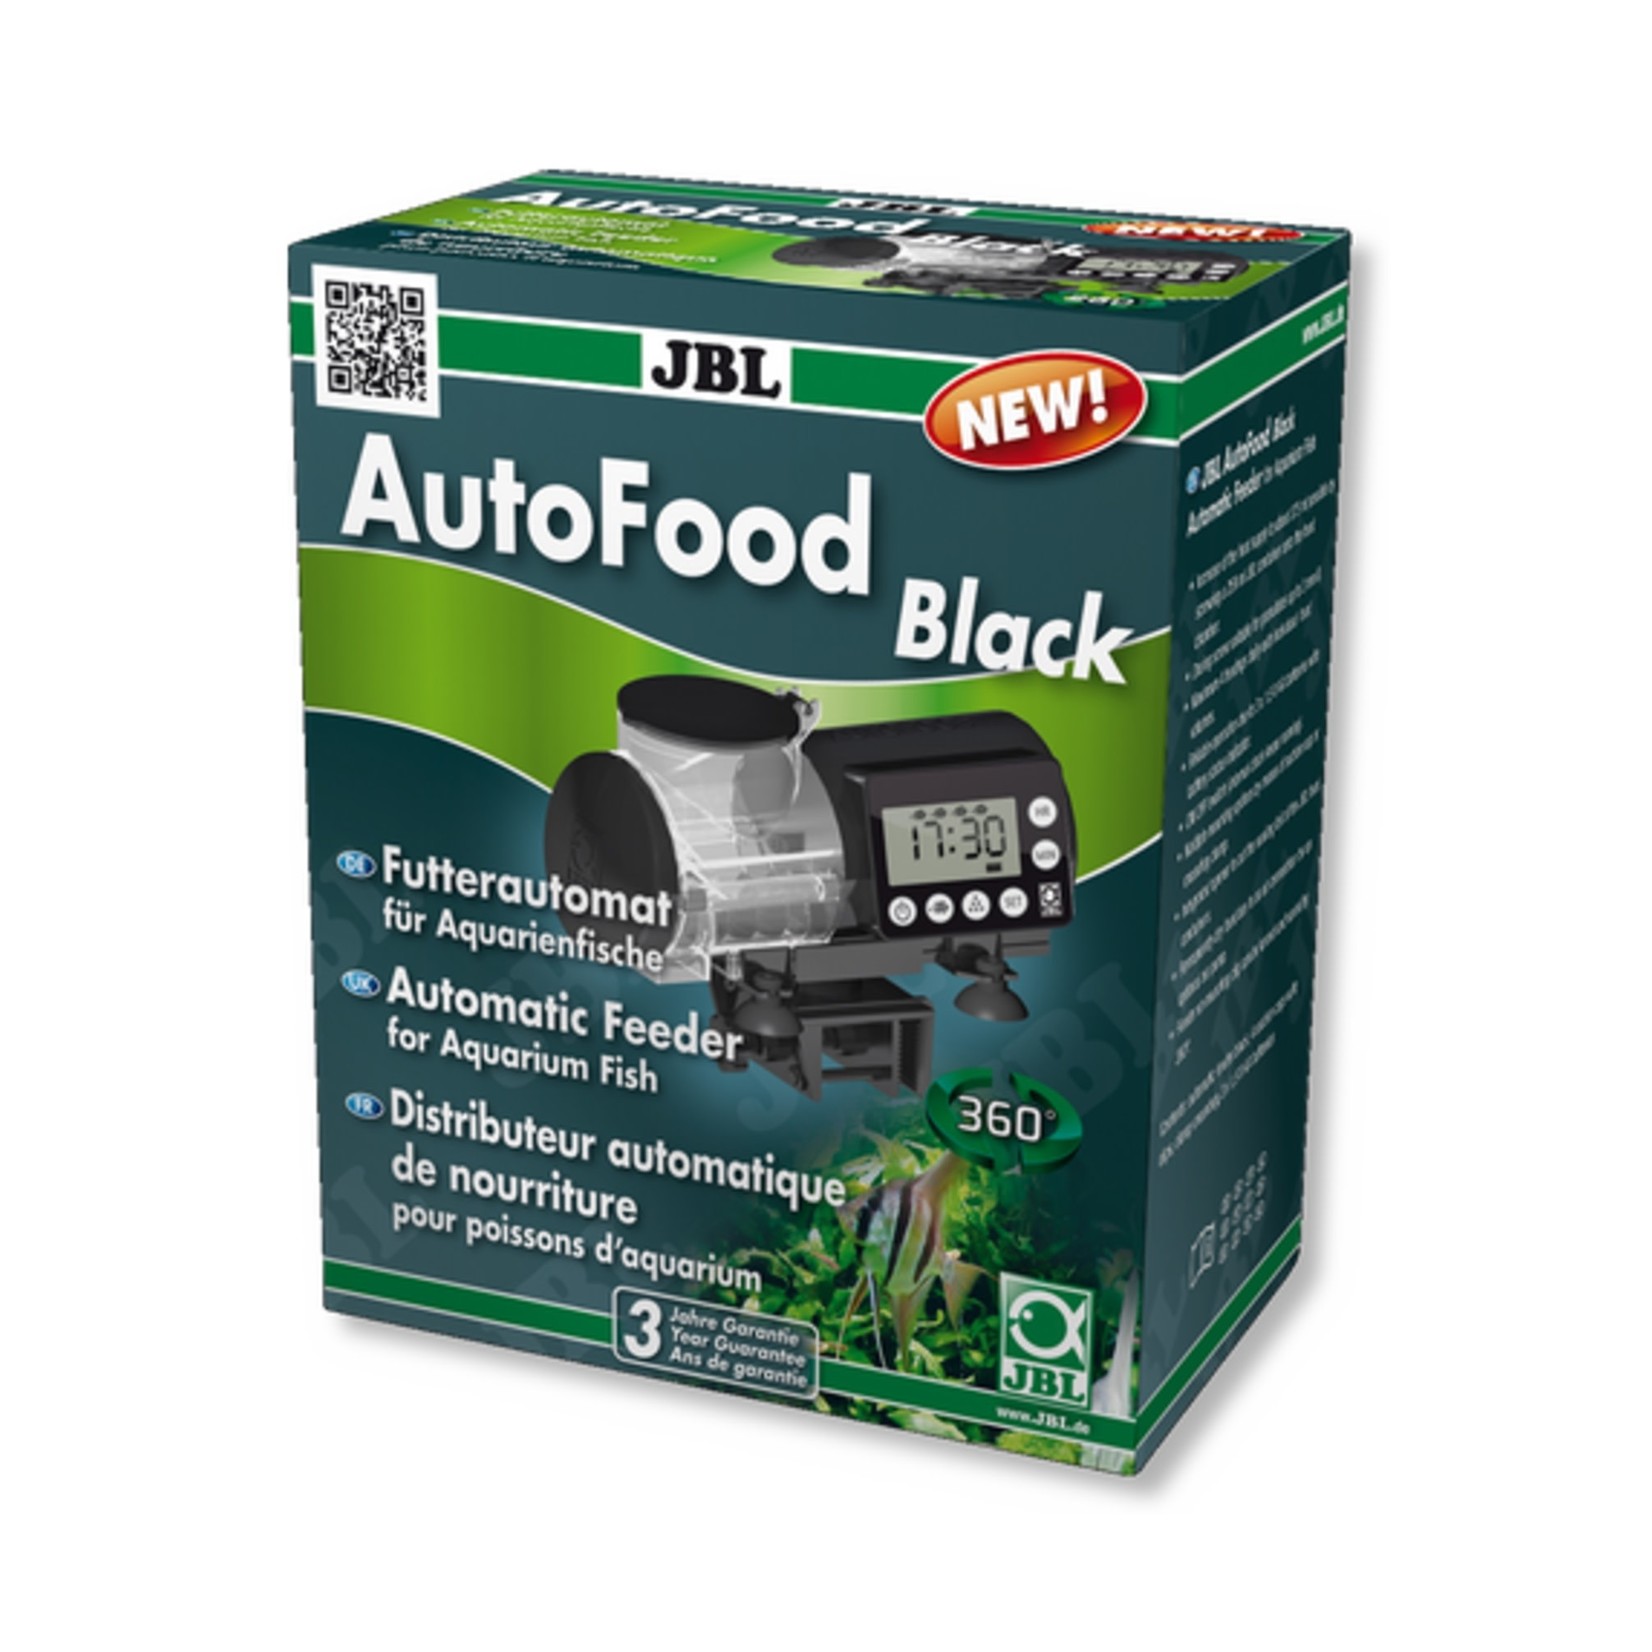 JBL JBL AutoFood Black Automatic Fish Feeder